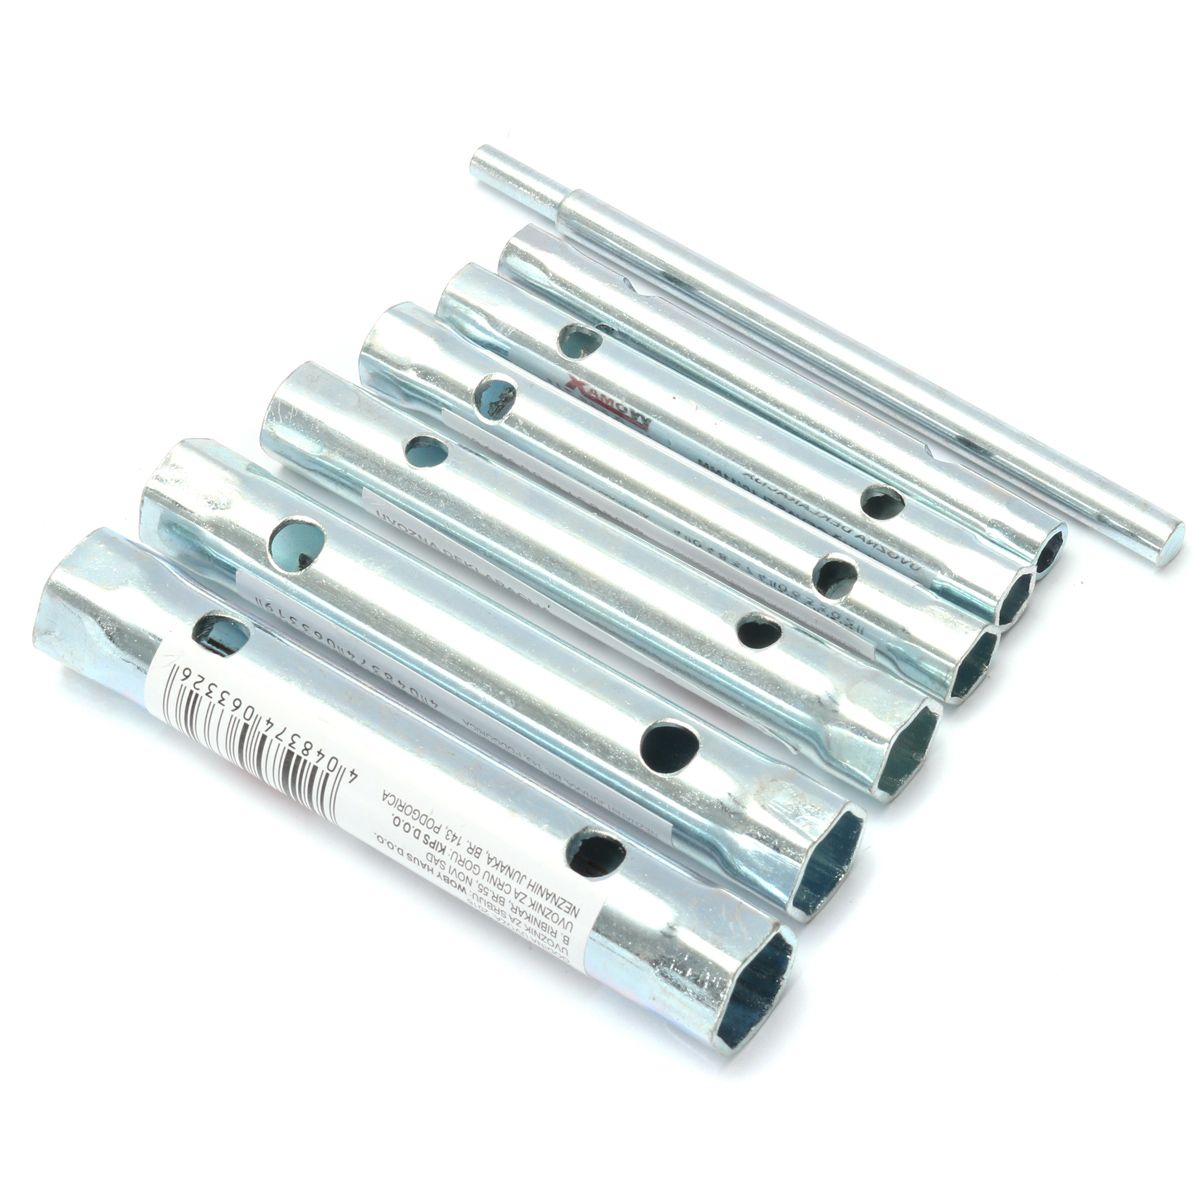 6Pcs-Tubular-Box-Spanner-Tube-Spanner-Wrench-Metric-Socket-Set-6mm-17mm-1104300